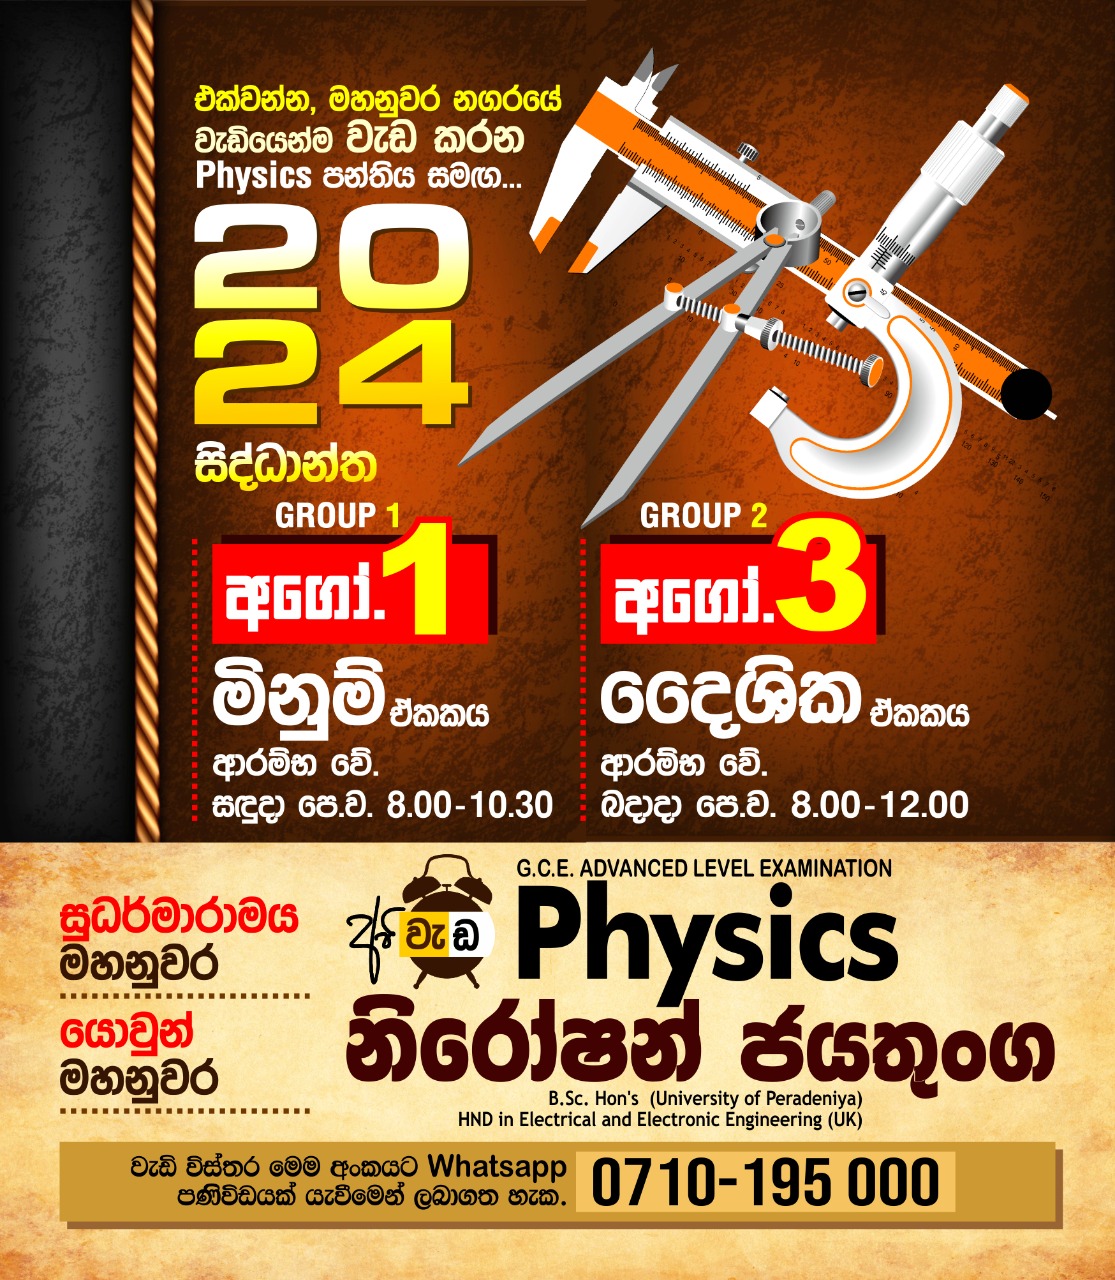 Niroshan Jayathunga, A Level Physics, Sudarmaramaya Kandy